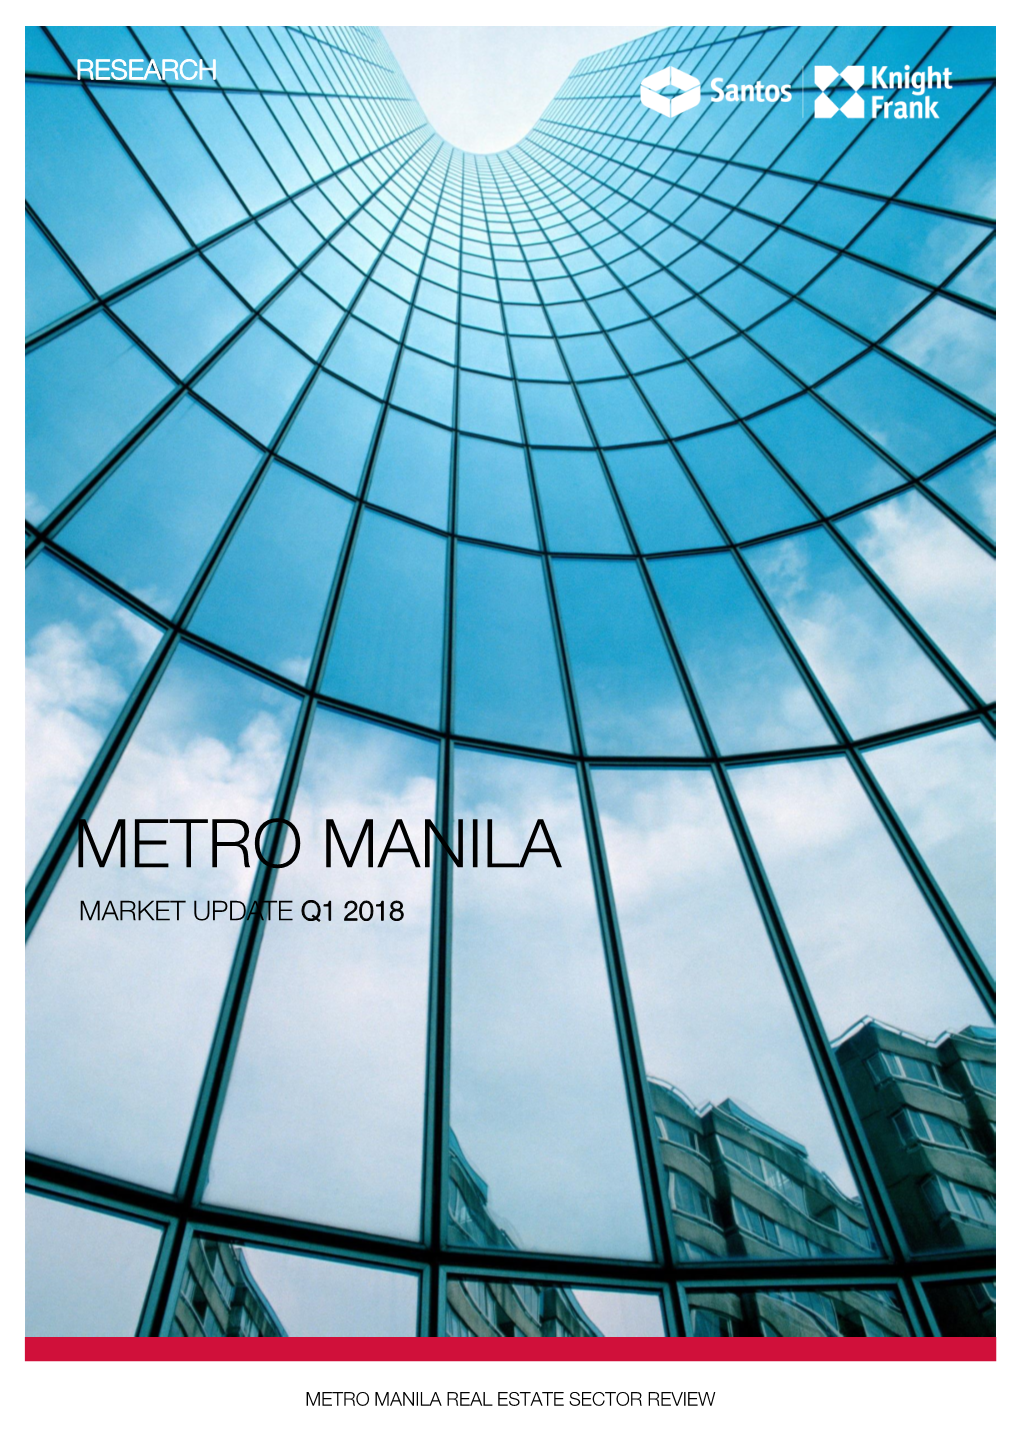 Metro Manila Market Update Q1 2018